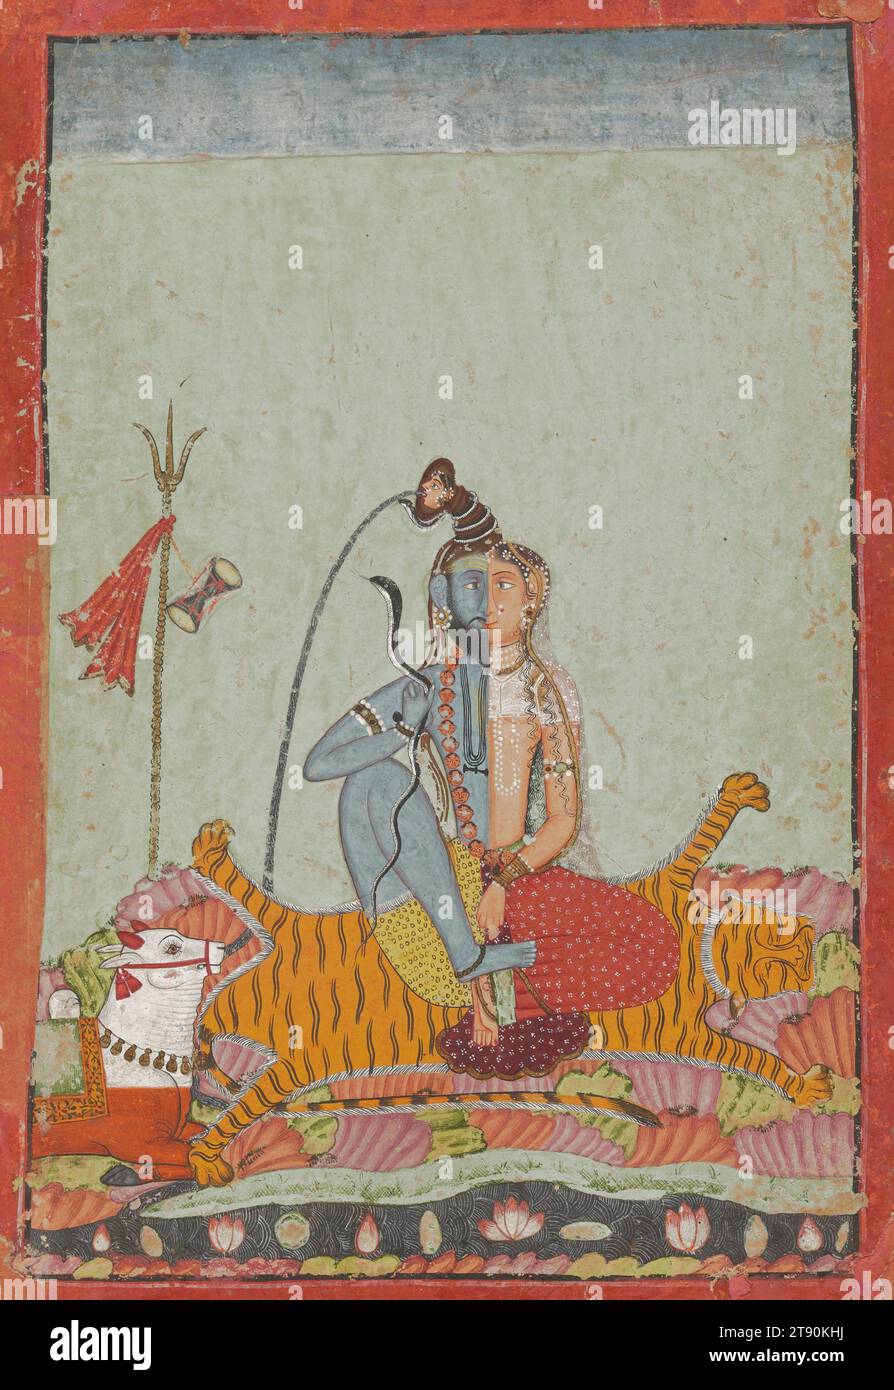 Shiva Ardhanarisvara, c. 1700-1750, 8 1/8 × 5 5/8 po. (20,64 × 14,29 cm) (image)25 3/4 × 21 3/4 × 1 po (65,41 × 55,25 × 2,54 cm) (cadre extérieur), aquarelle opaque rehaussée d’or sur papier, Inde, 18e siècle, dans cette image hypnotique, le dieu hindou Shiva et sa femme Parvati partagent un seul corps, sous la forme connue sous le nom d’Ardhanarisvara, « seigneur dont la moitié est femme » Il révèle Shiva comme un symbole de son omnipotence, la semence et le ventre de toute création et destruction. Ici, une verticale tranchante divise et unit l'image, l'artiste représentant les moitiés respectives Banque D'Images